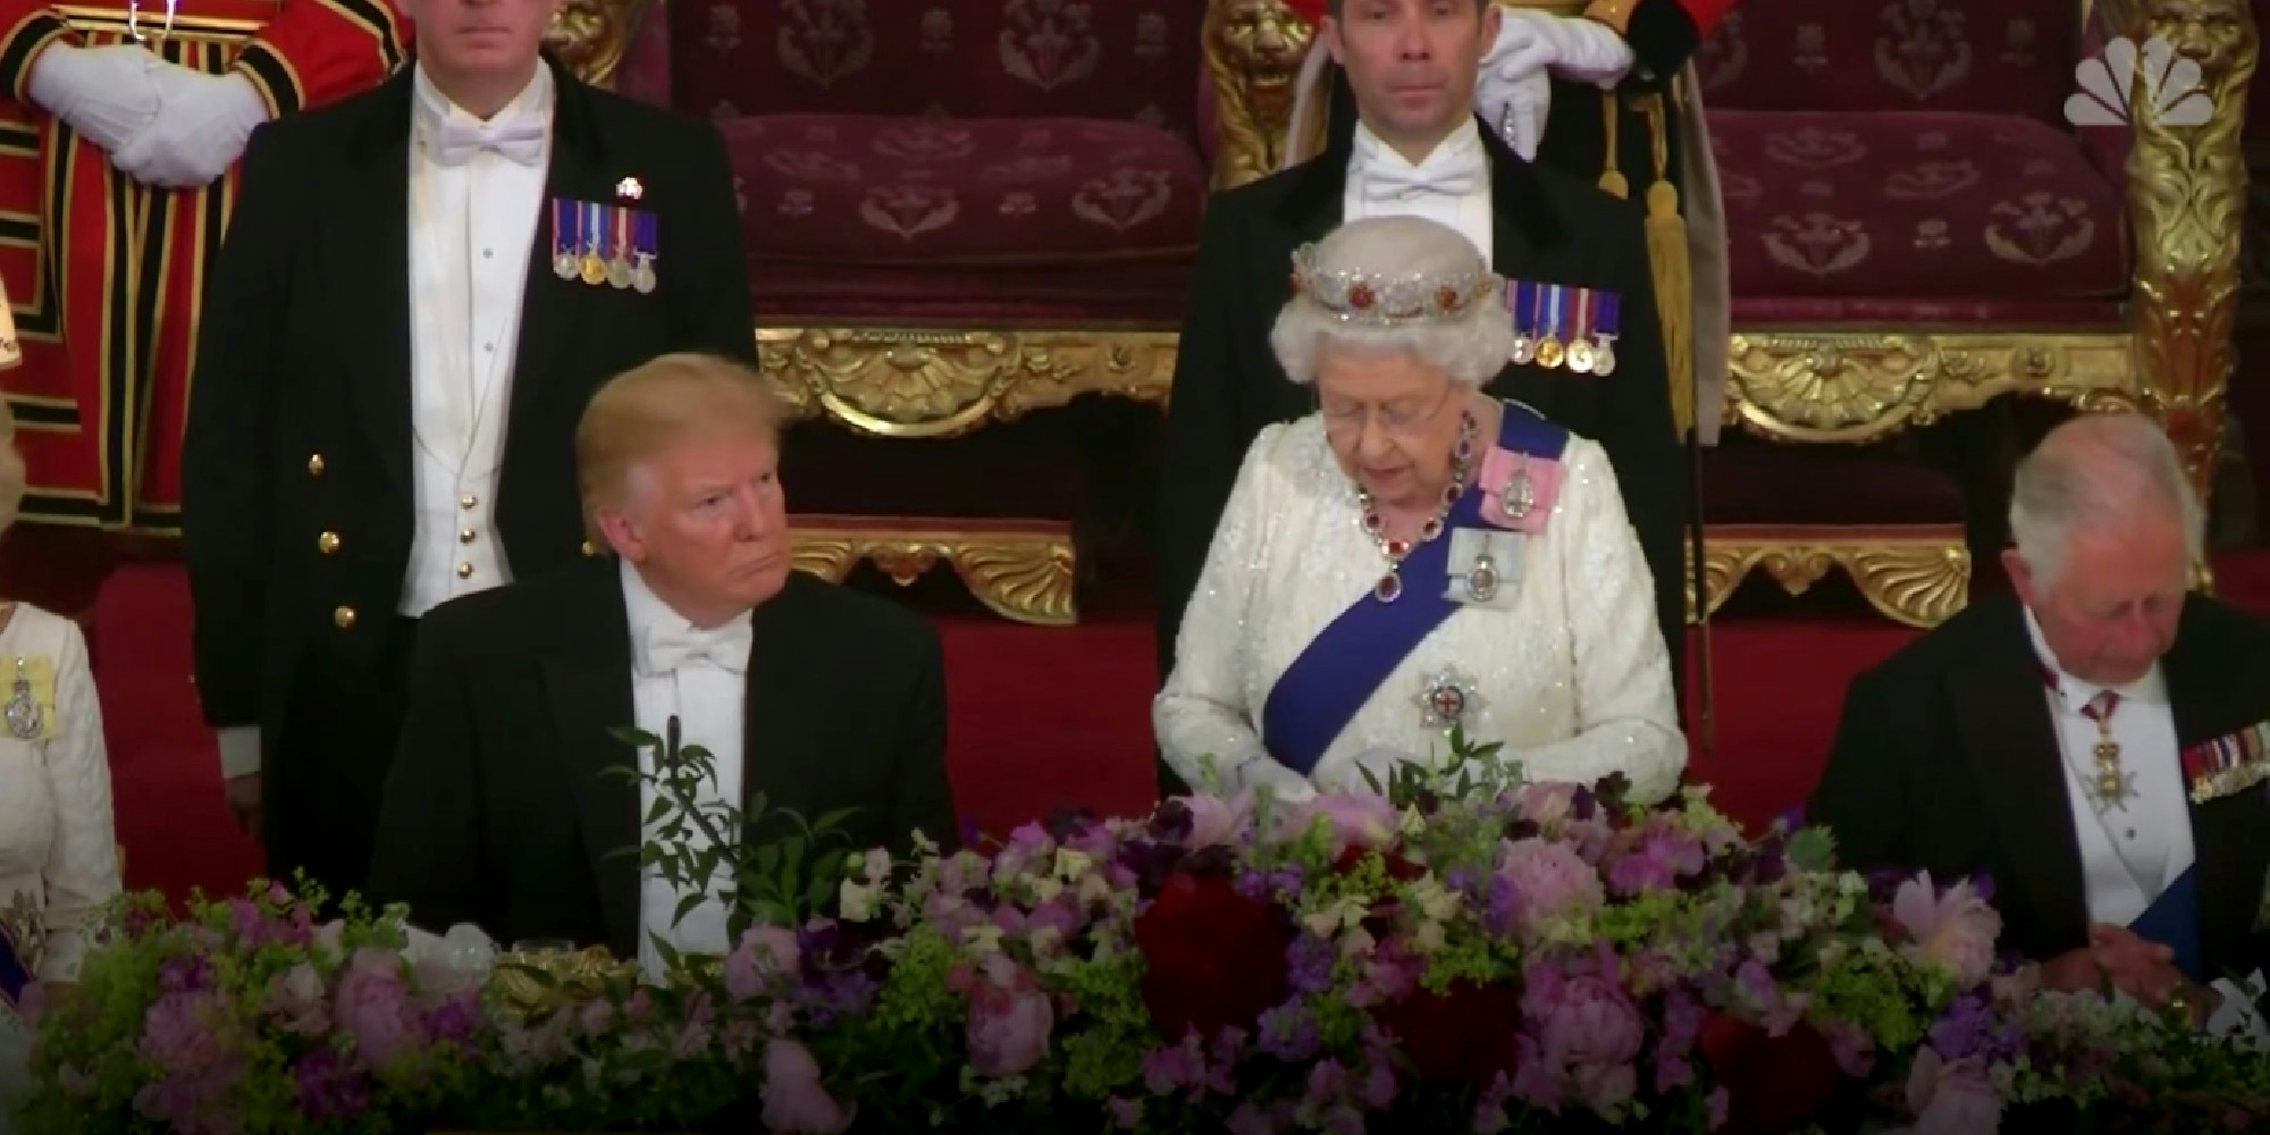 Donald Trump sitting next to Queen Elizabeth II